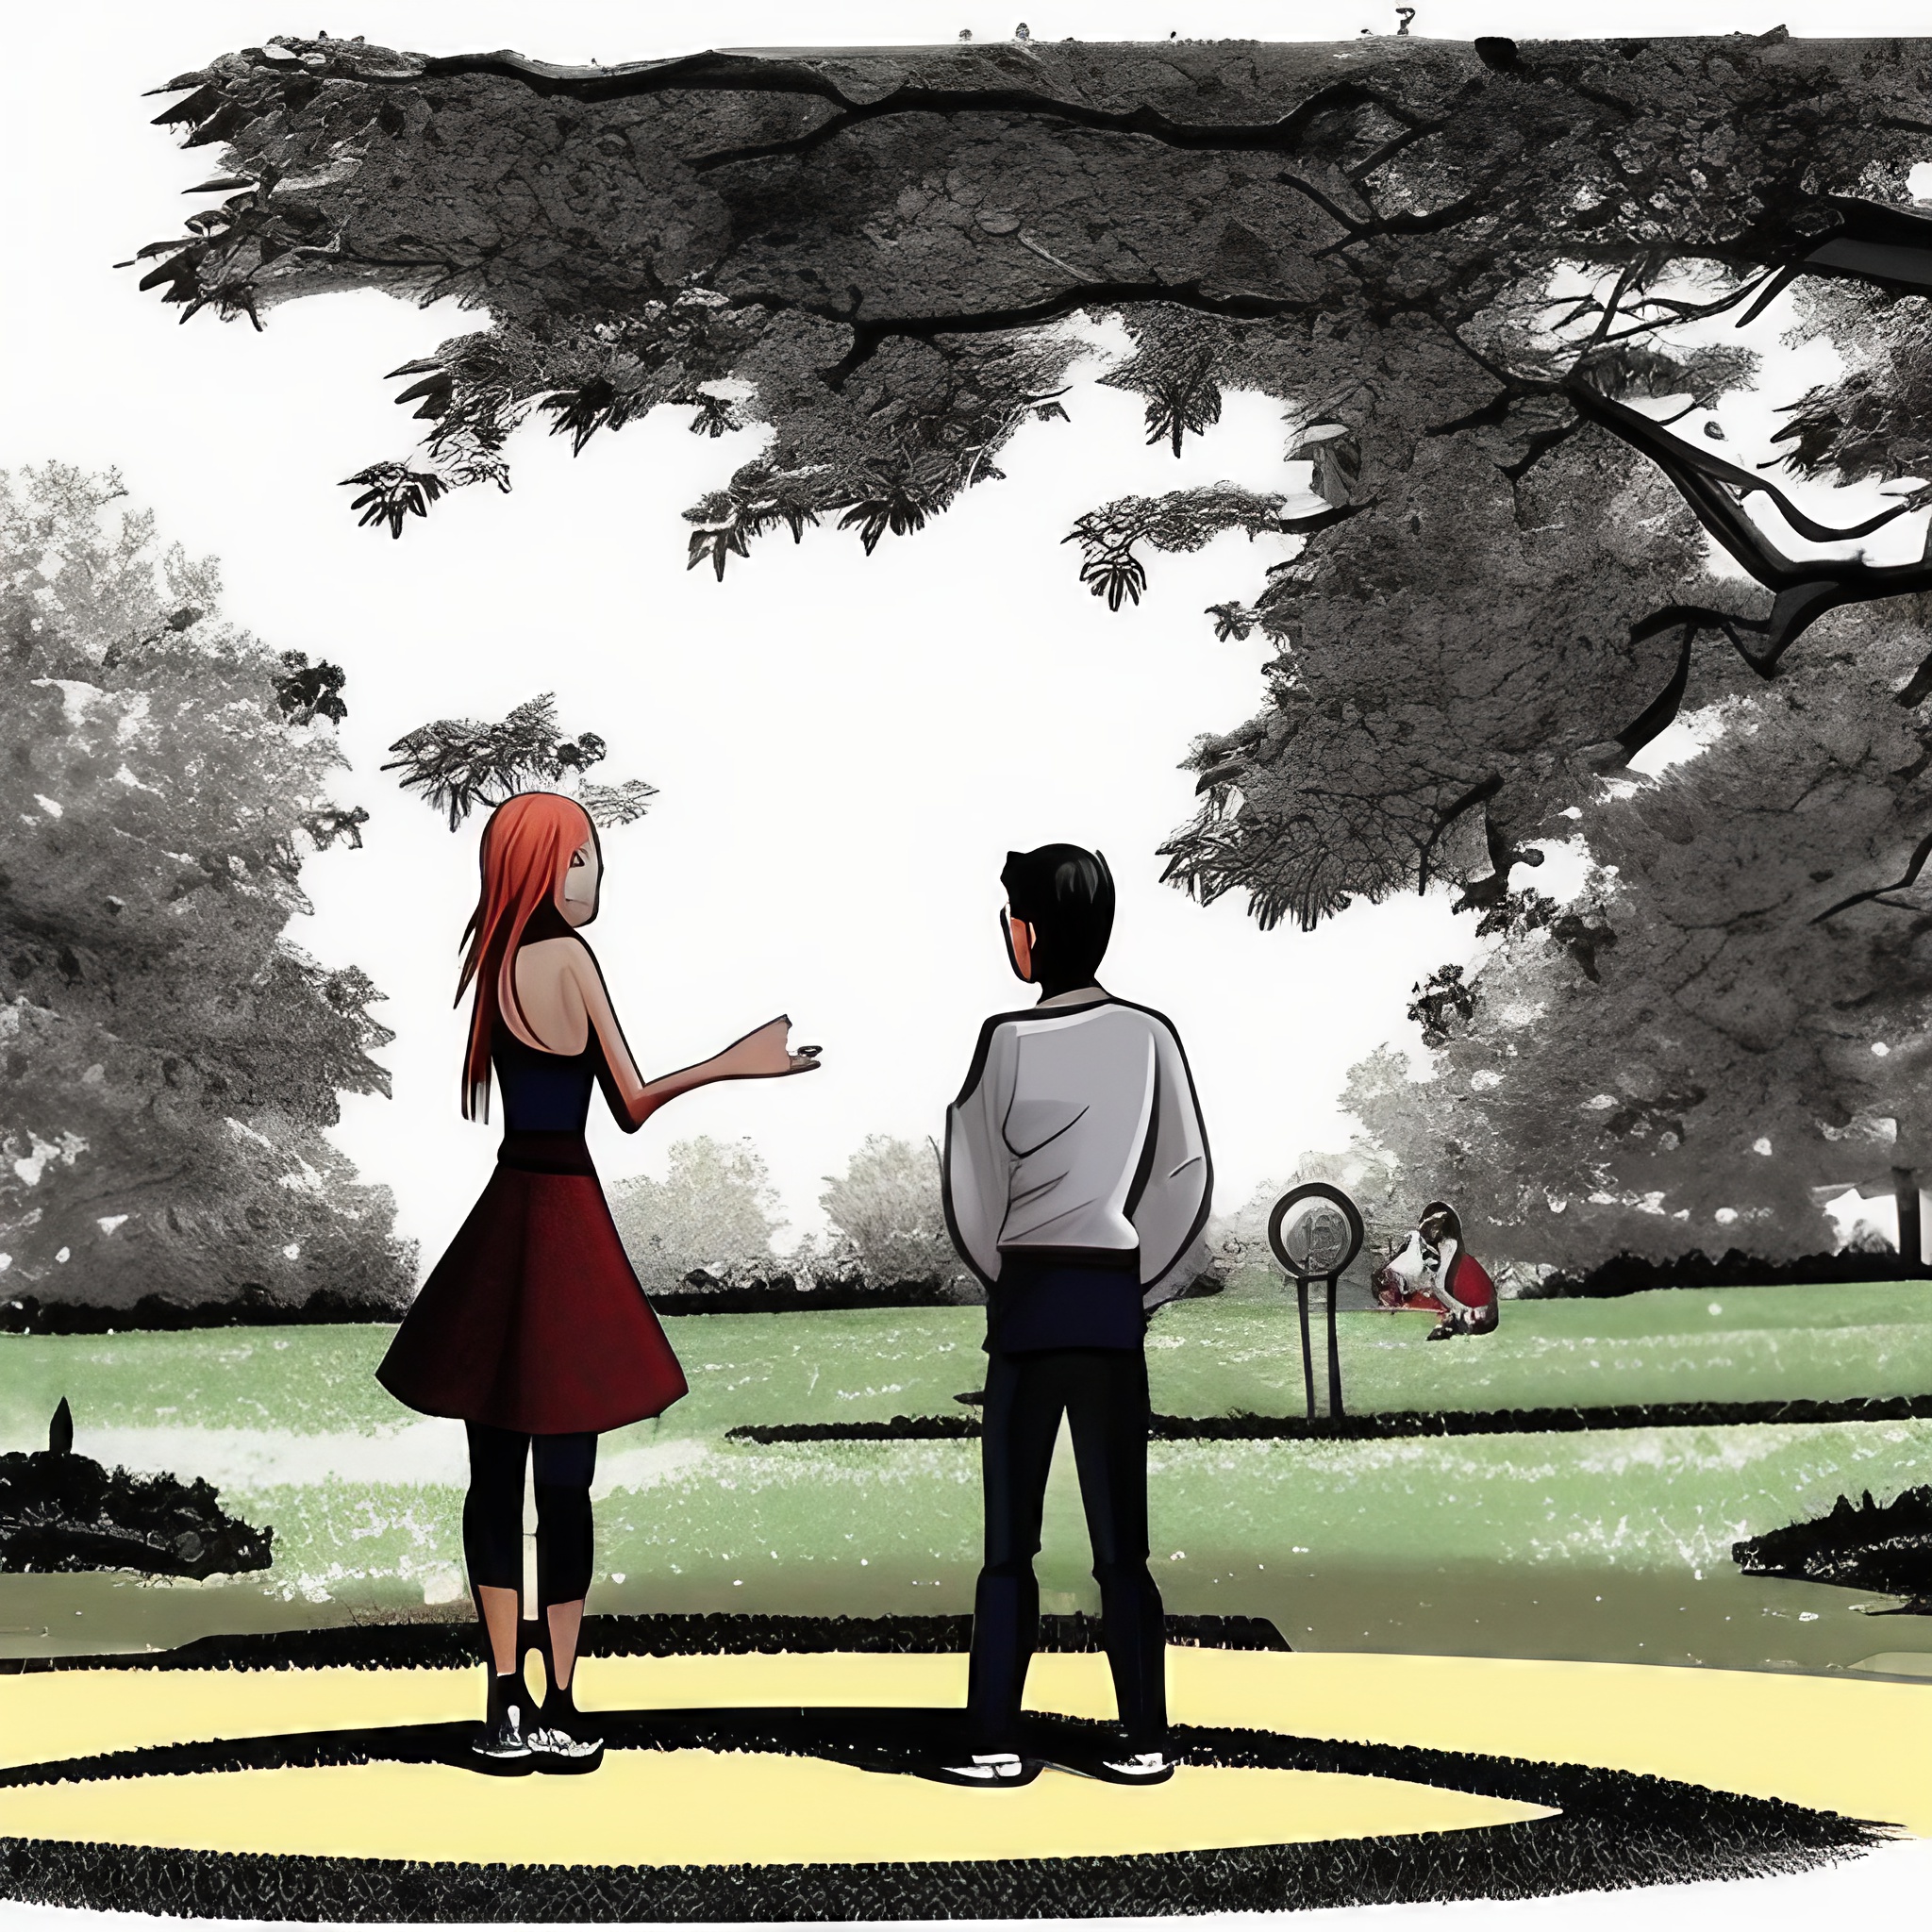 grafika w stylu kreskówki na grafice widać mężczyznę i kobietę rozmawiających w parku